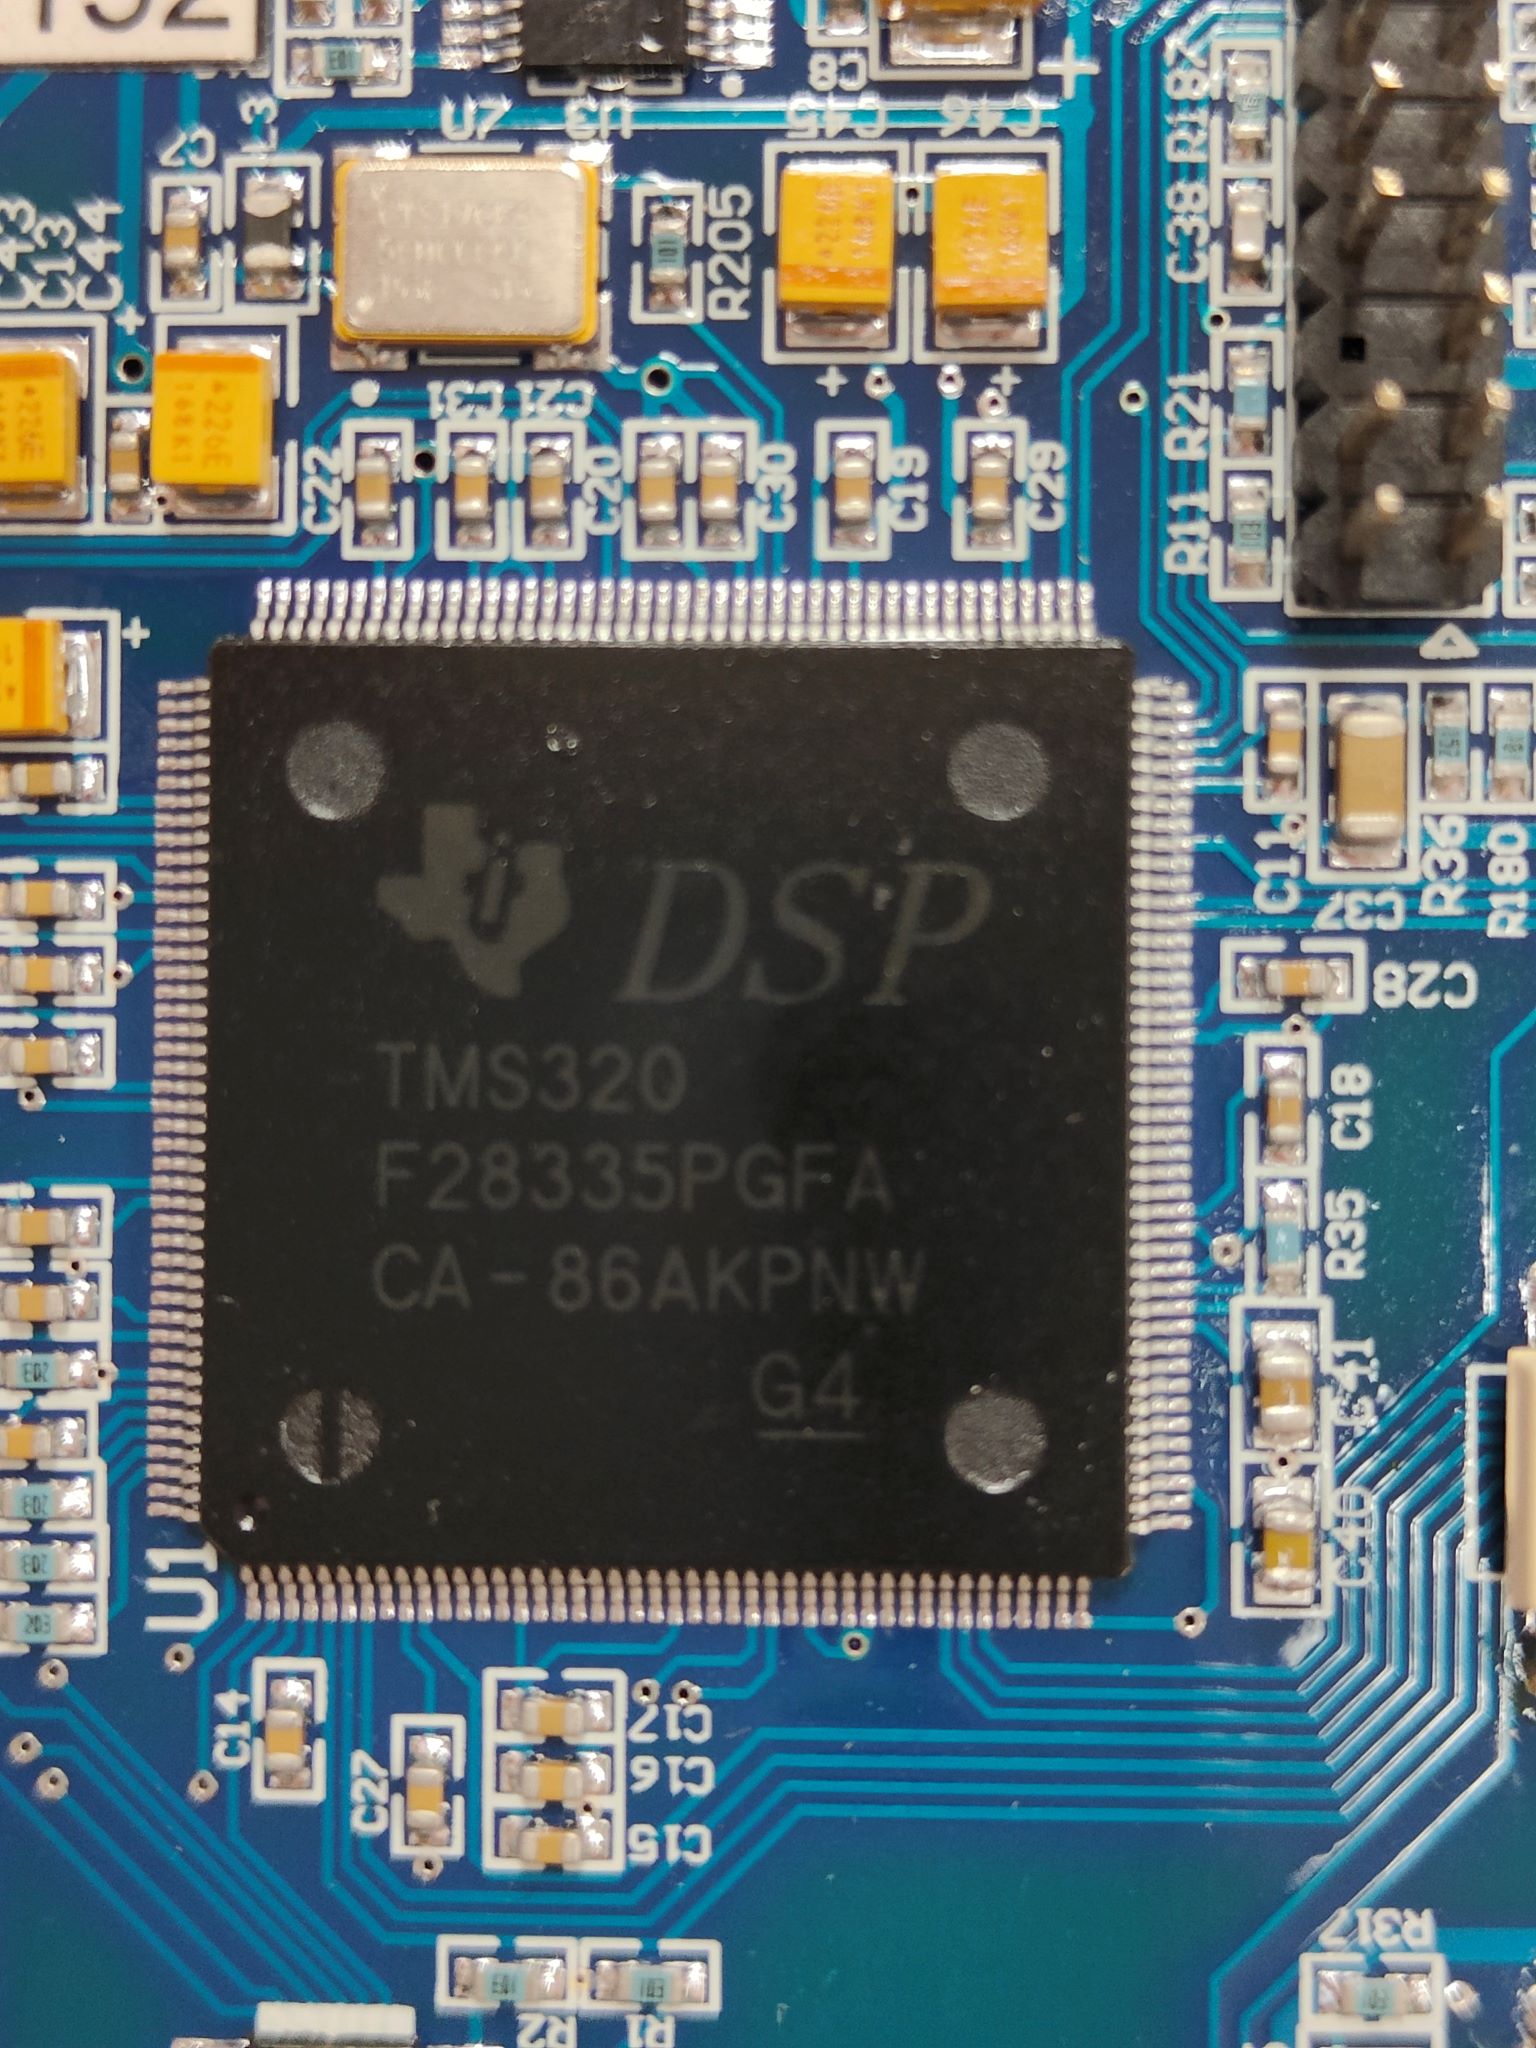 Микроконтроллер реального времени с диспетчером подключений DSP